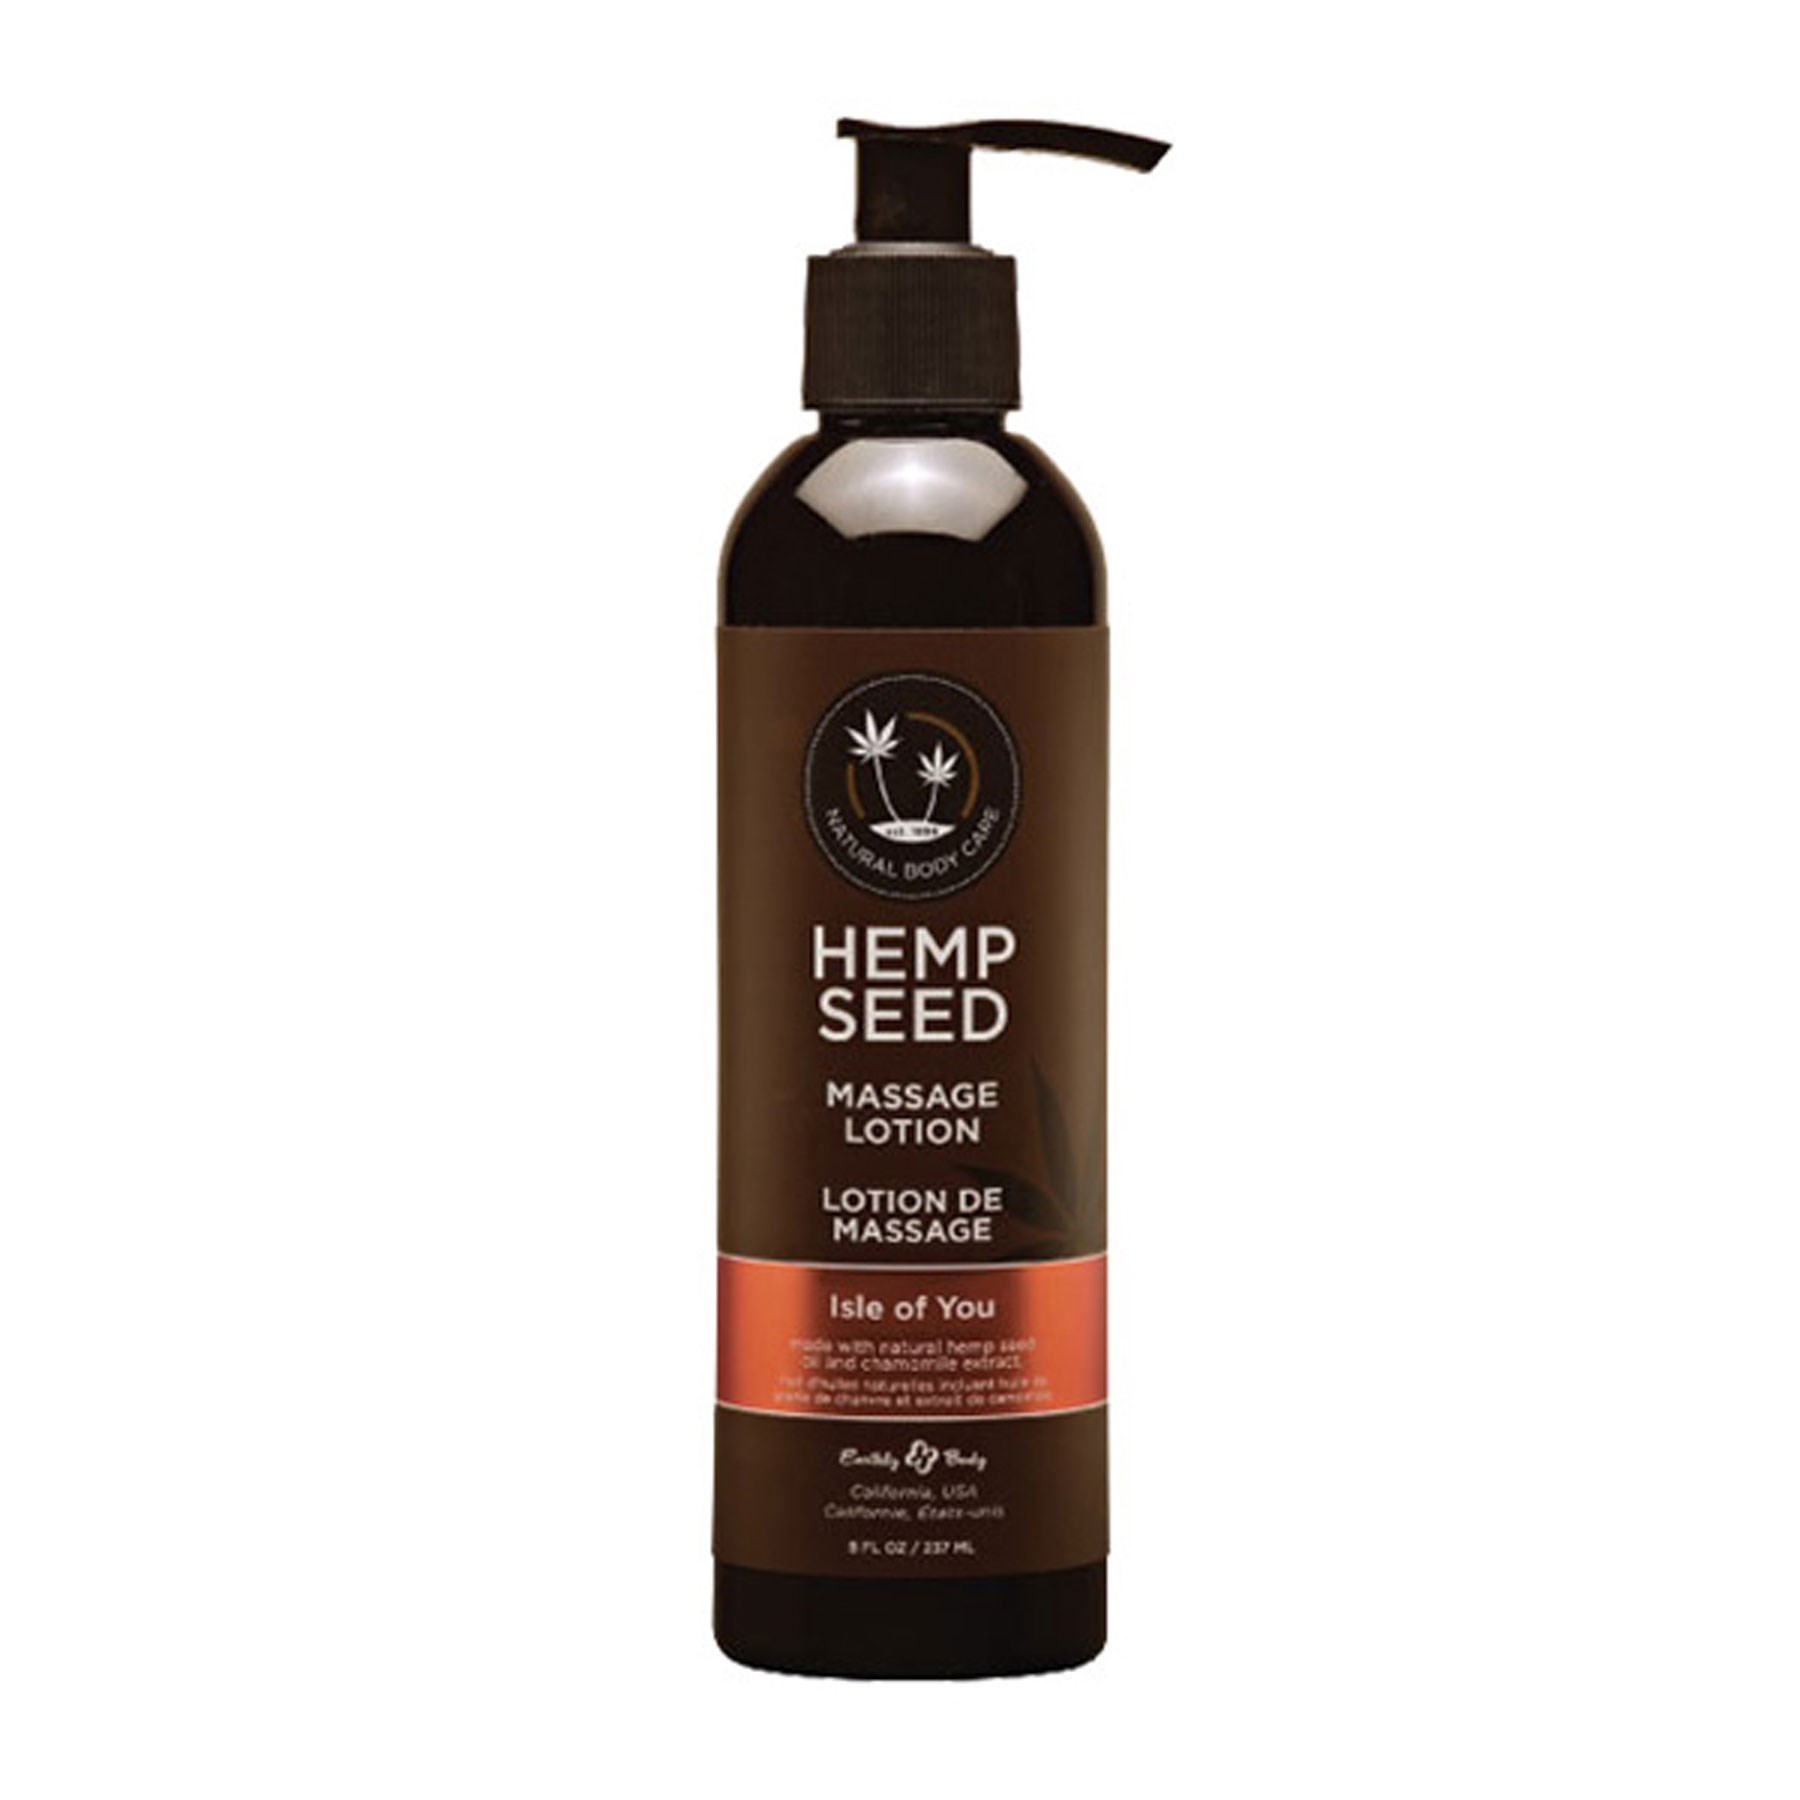 Hemp Seed Massage Lotion- Isle of You Bottle